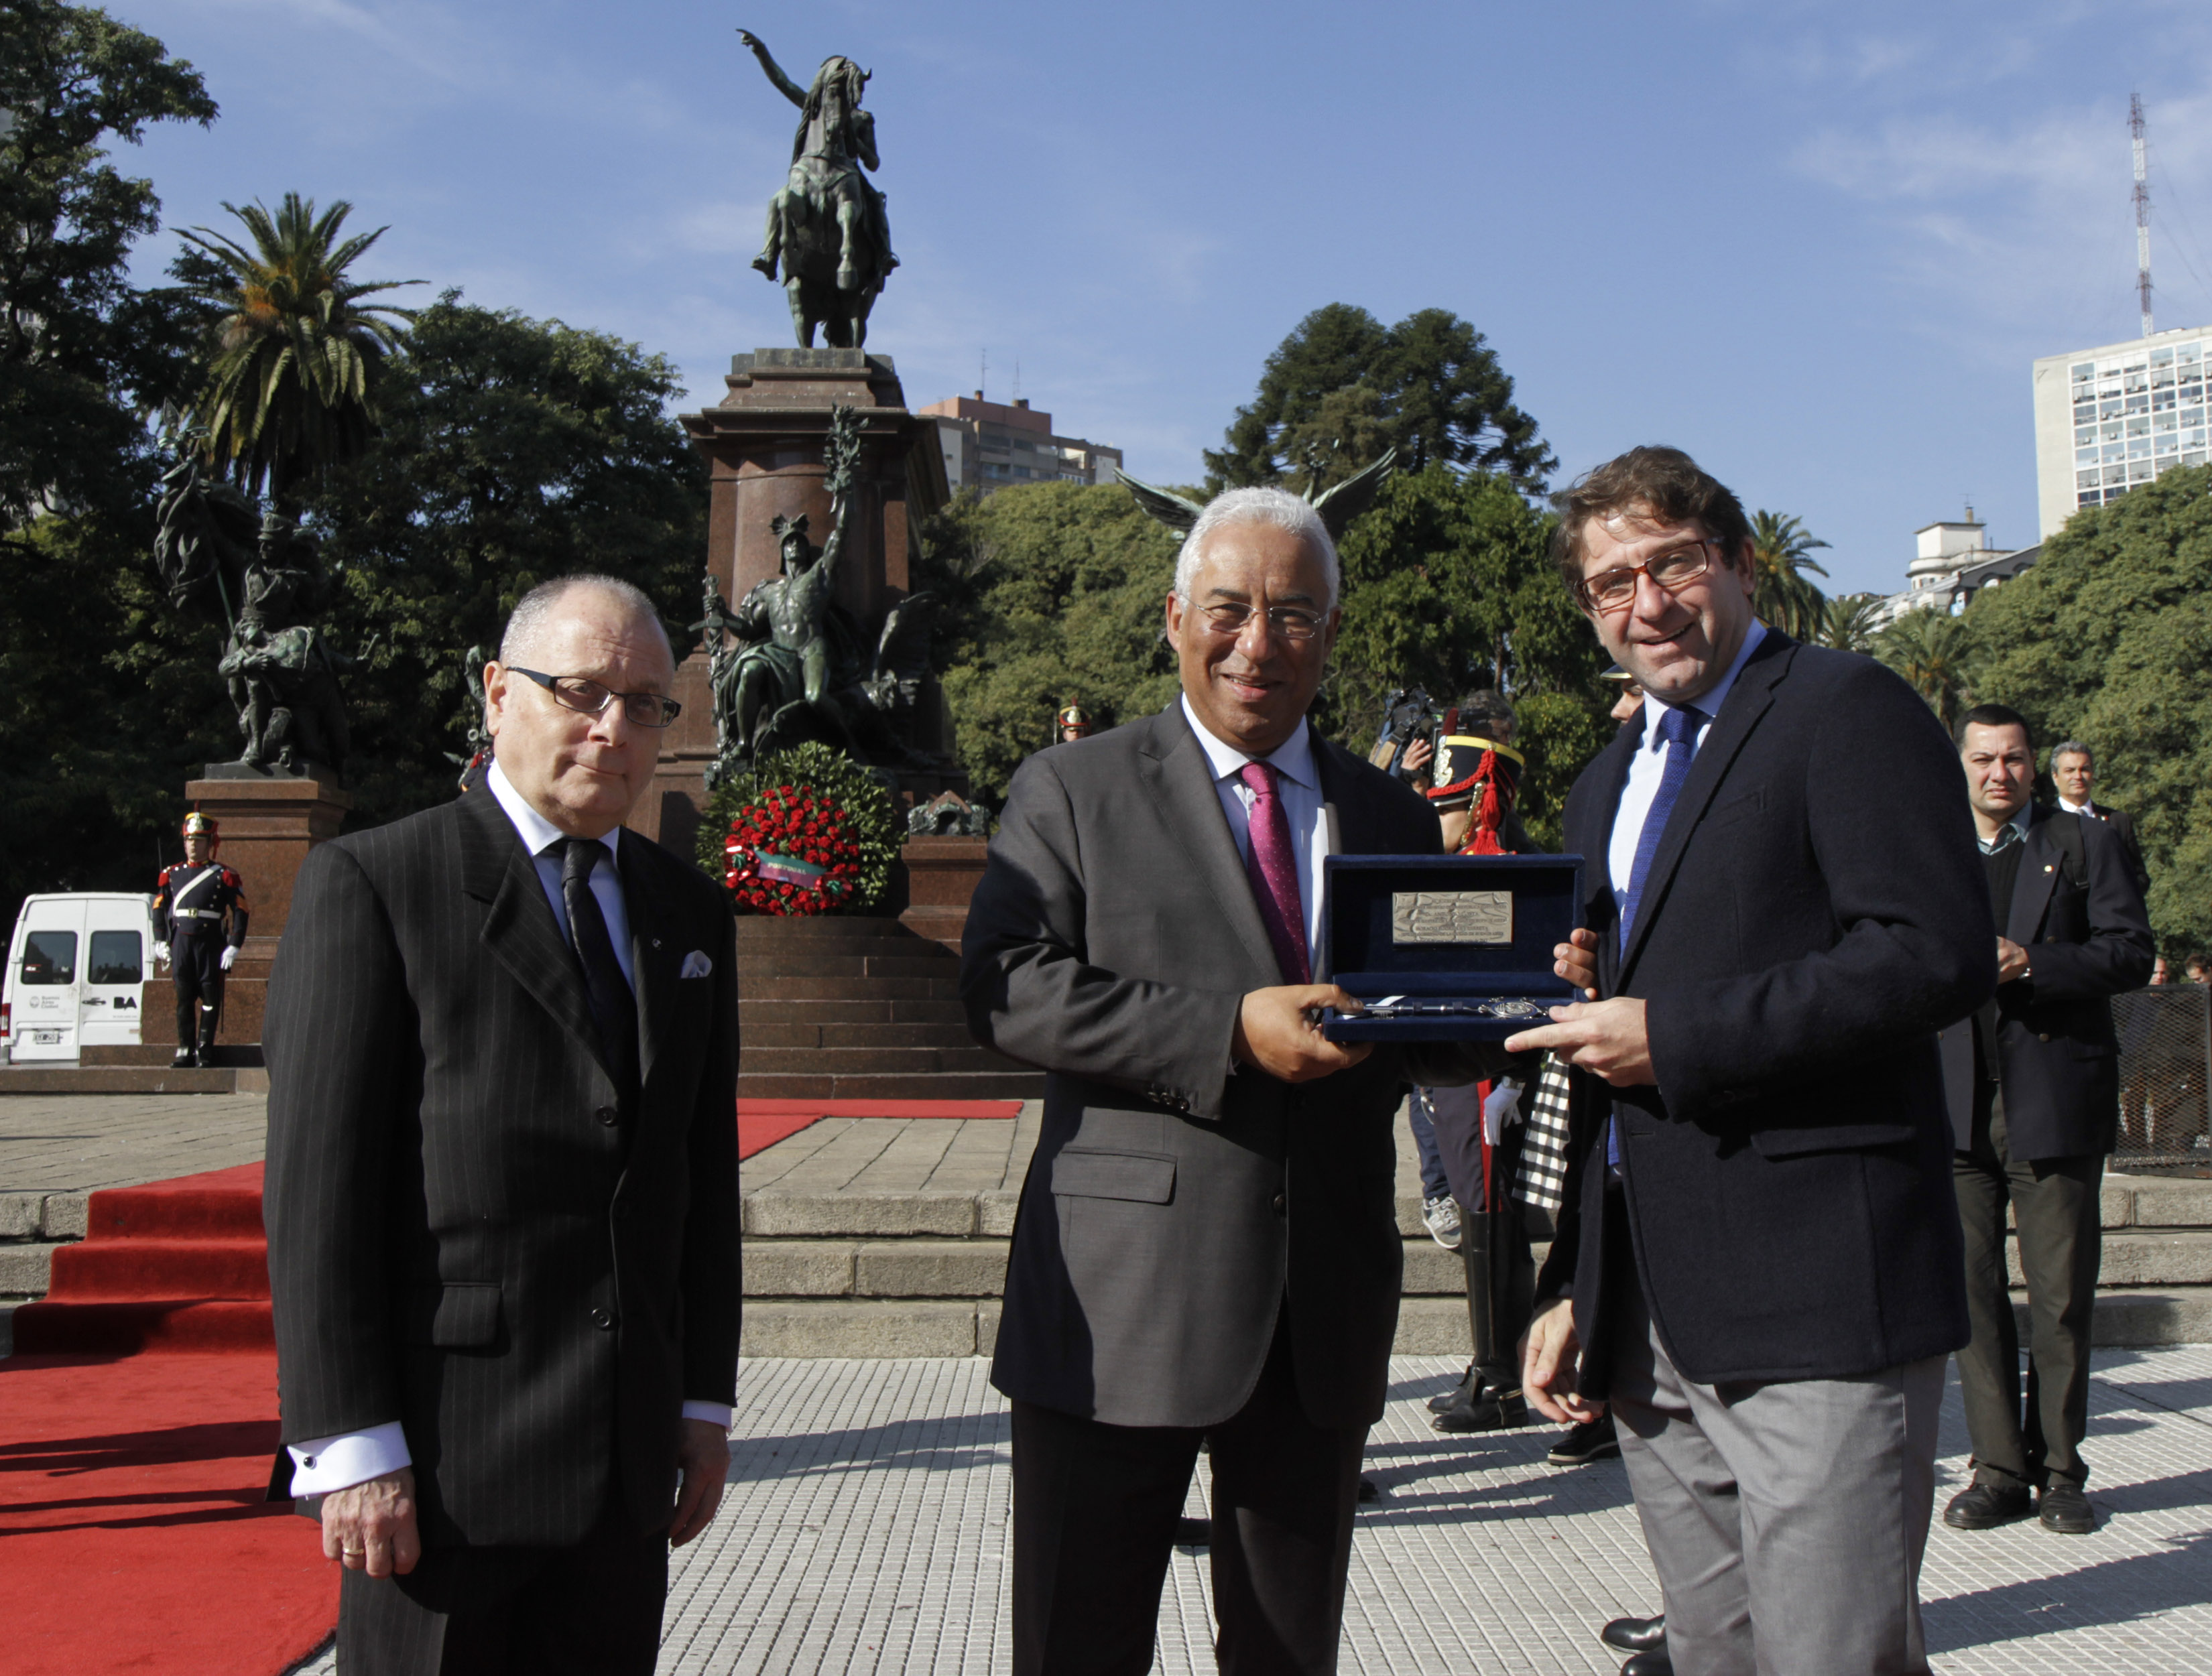 Fernando Straface entregó la llave de la Ciudad al Primer Ministro de Portugal